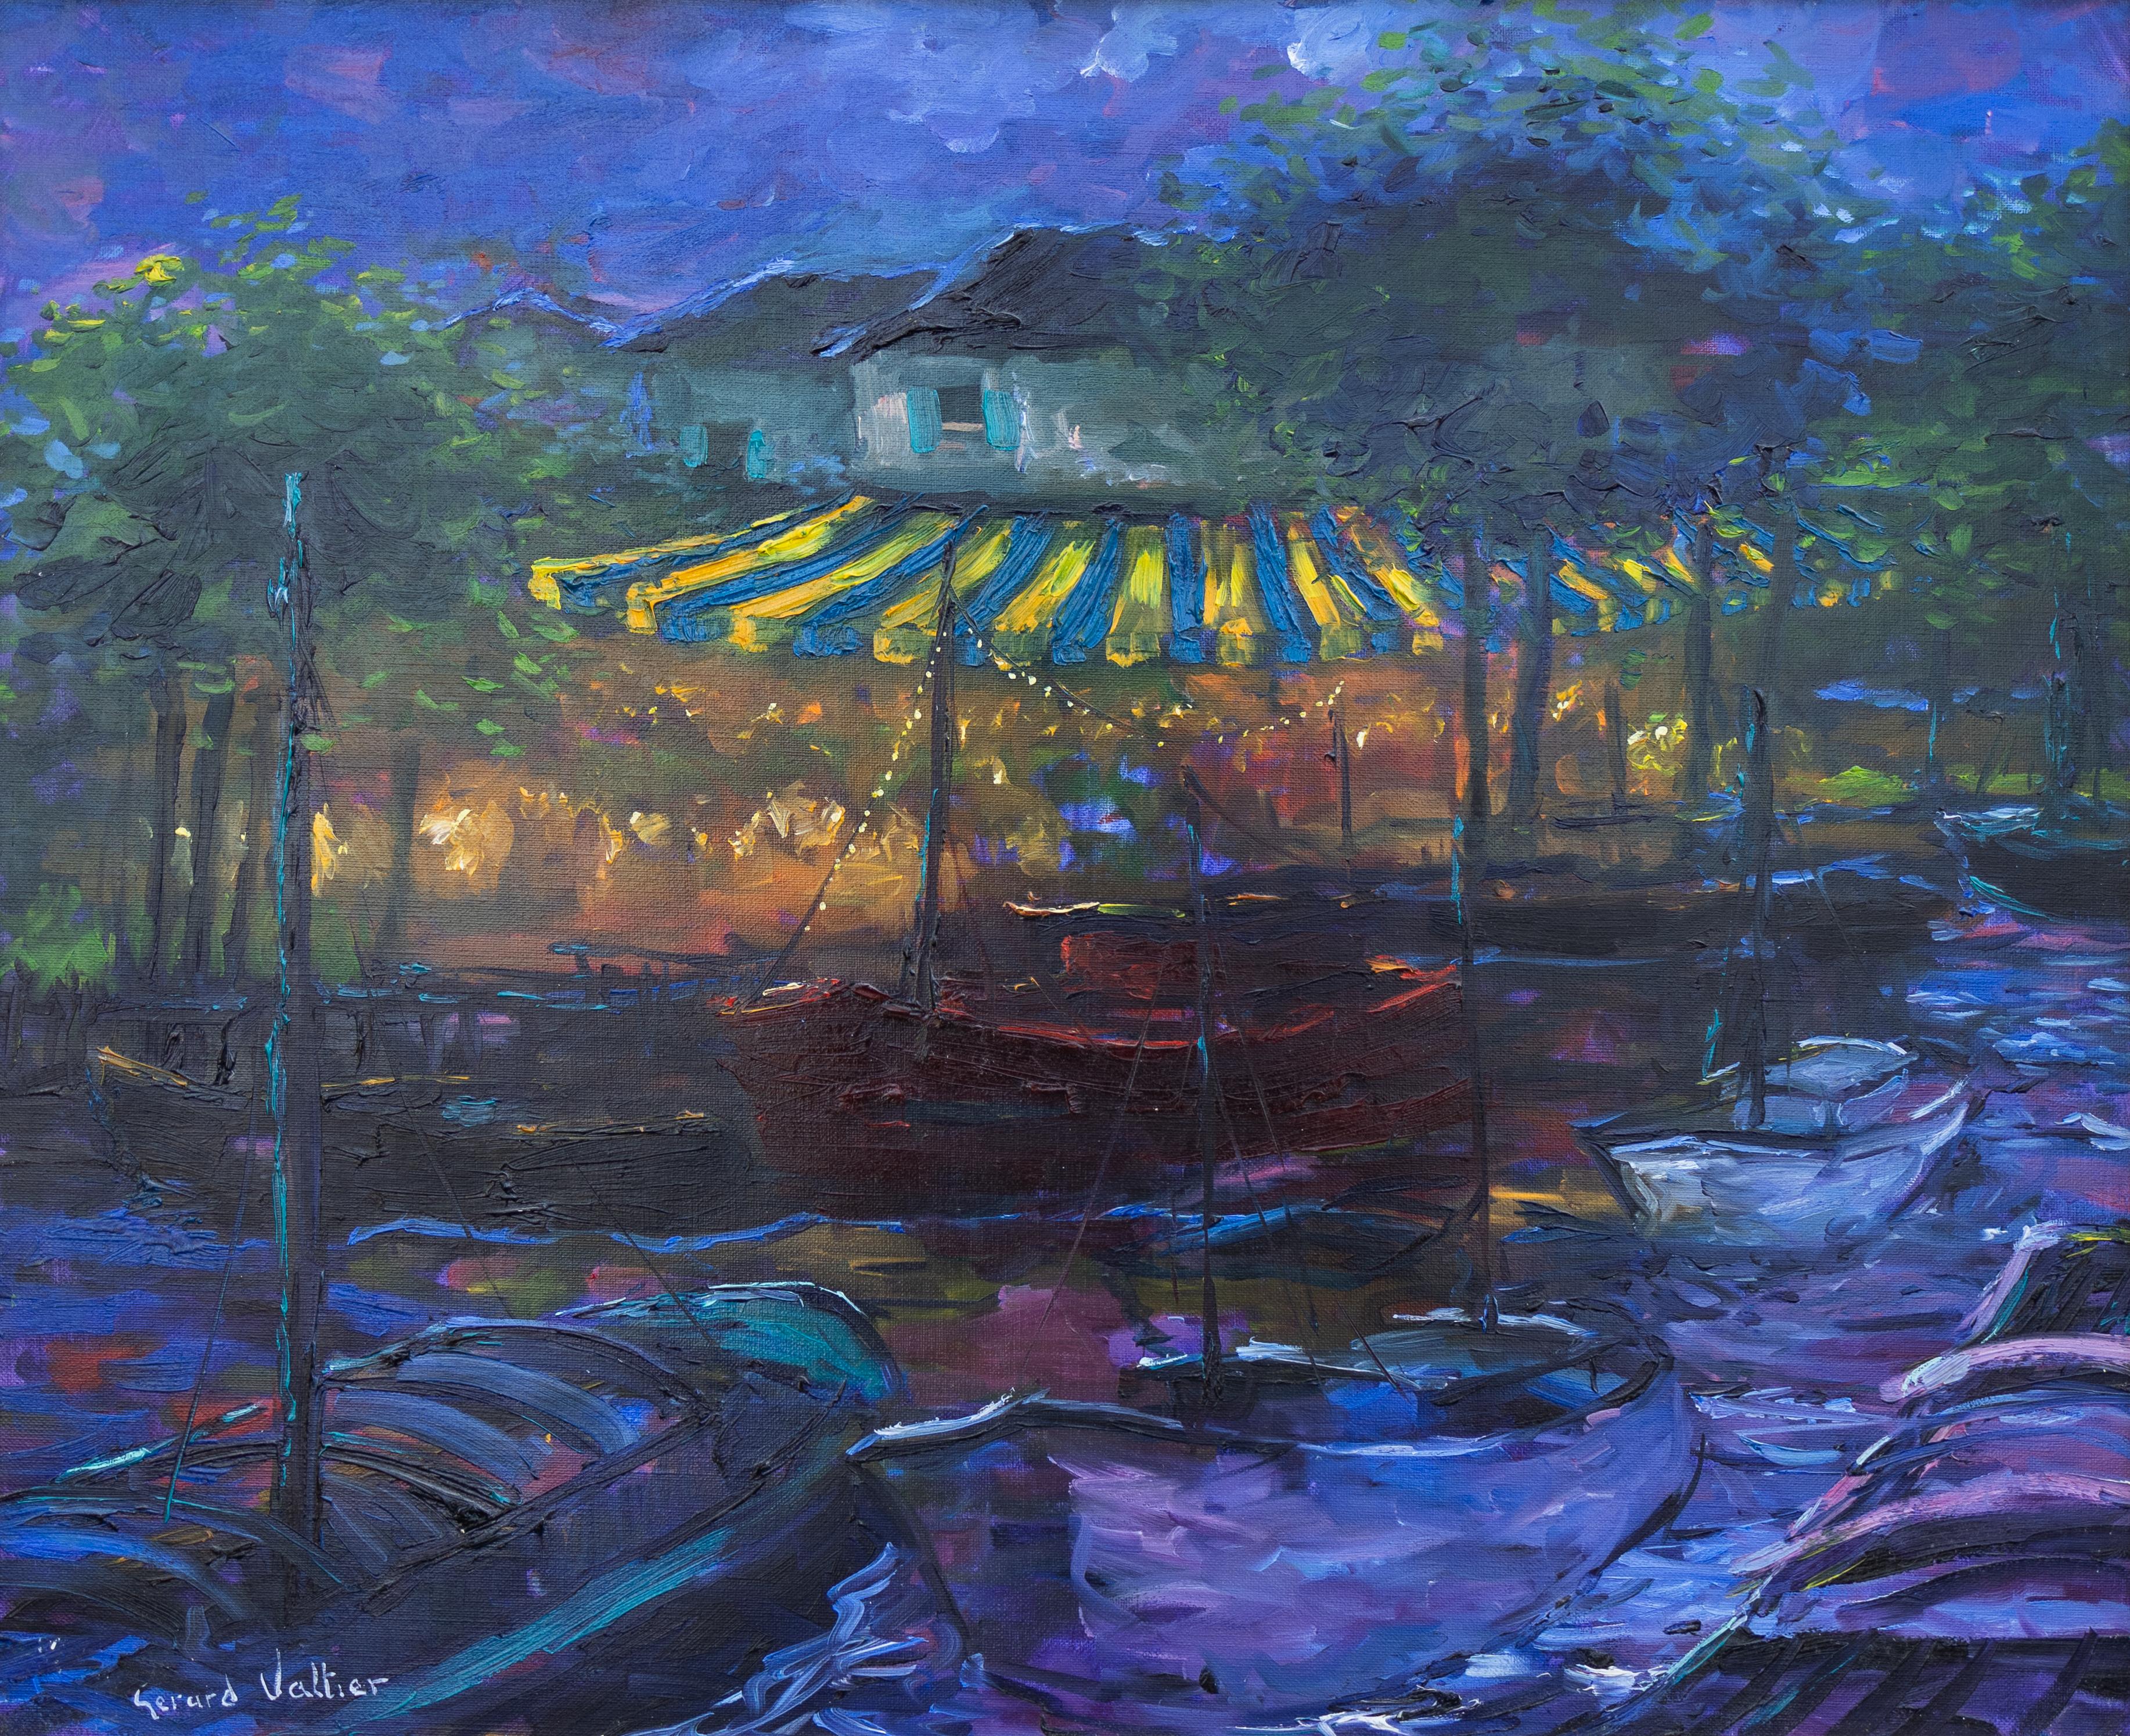 Landscape Painting Gerard Valtier - "Harbor at Night" Peinture impressionniste Paysage marin avec bateaux sur l'eau